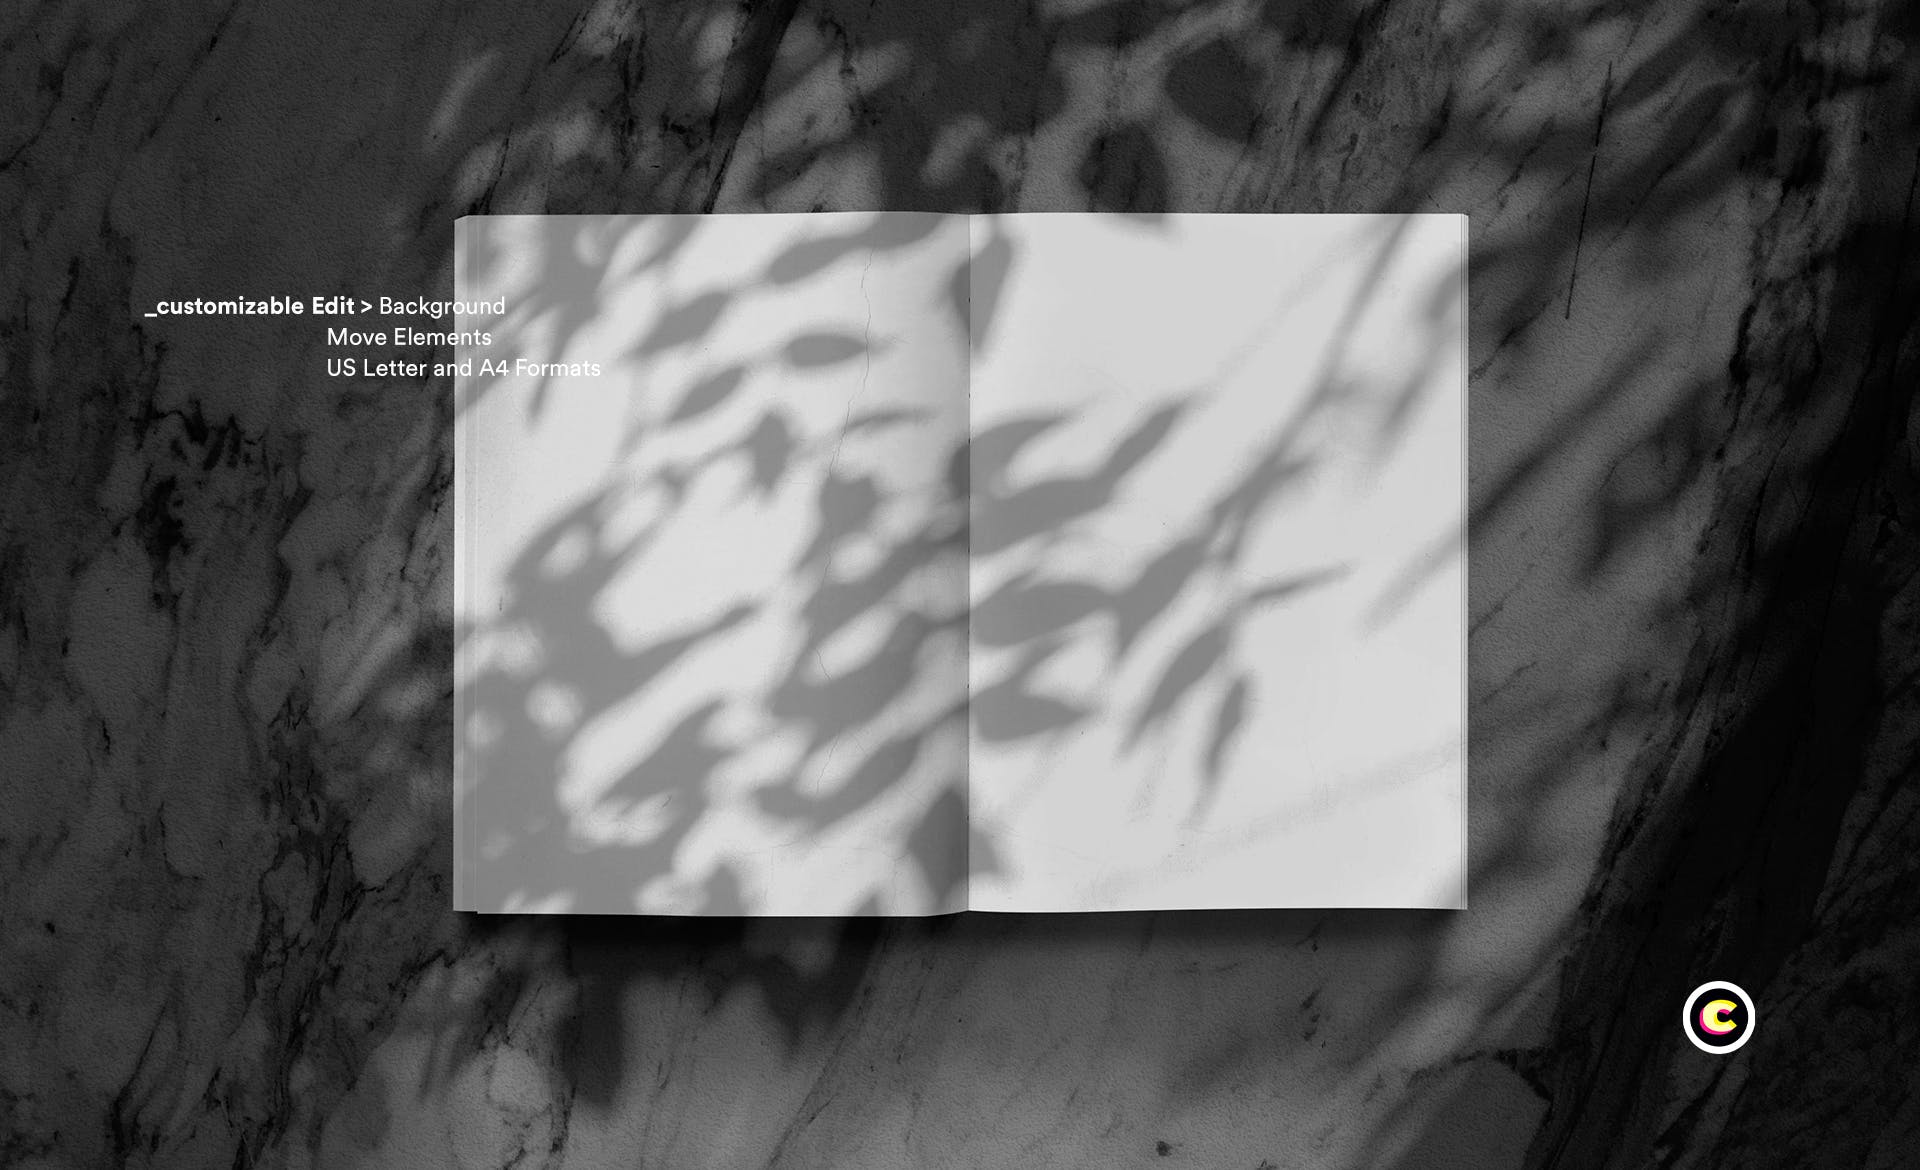 植物阴影大理石背景杂志版式设计预览样机第一素材精选模板 Magazine Mock Up插图(3)